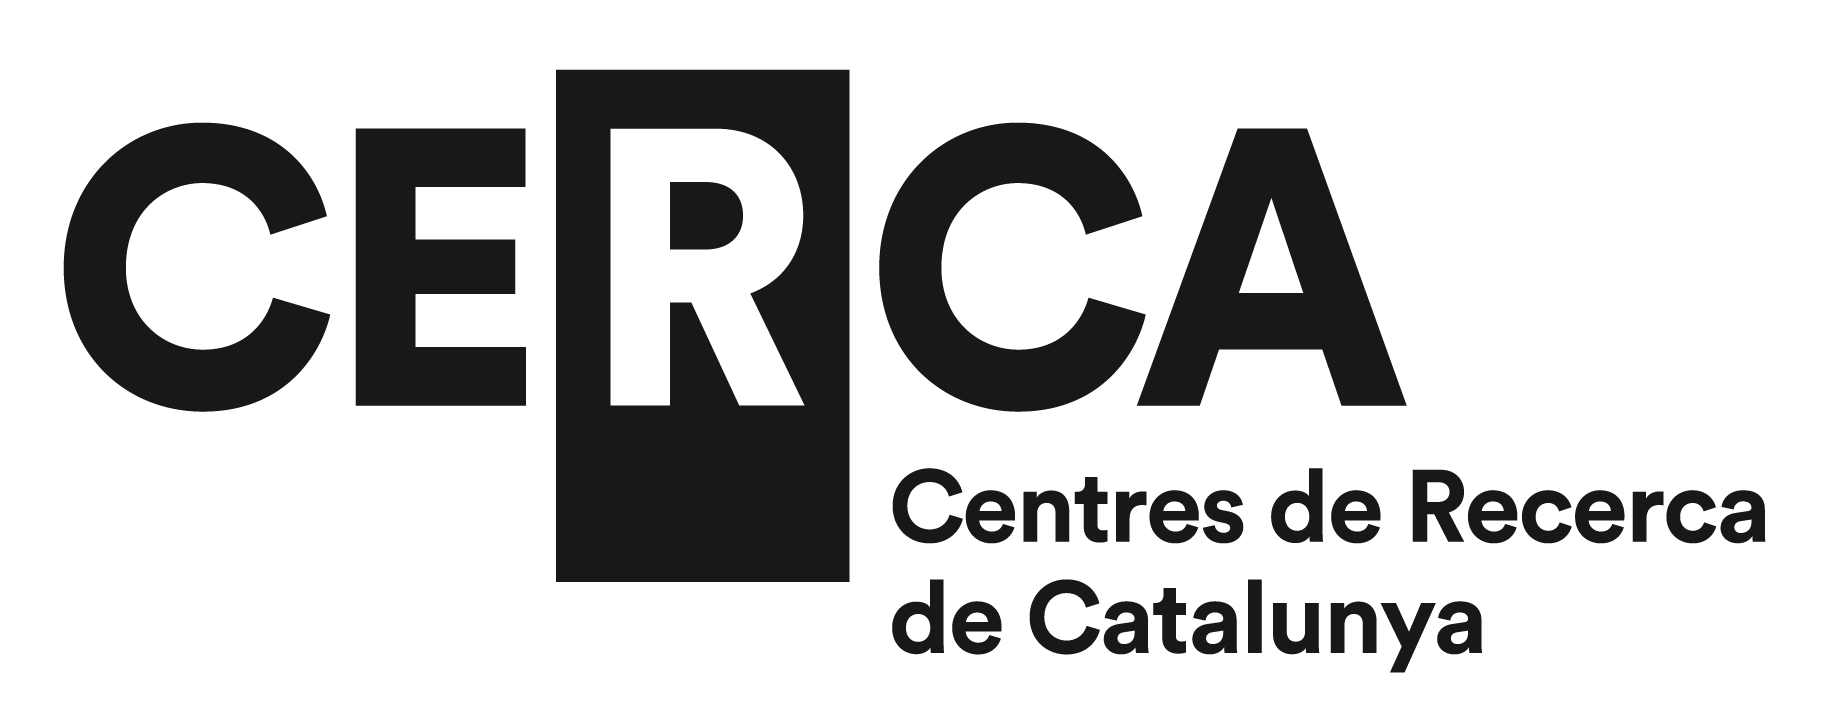 Logo La institució Centres de Recerca de Catalunya